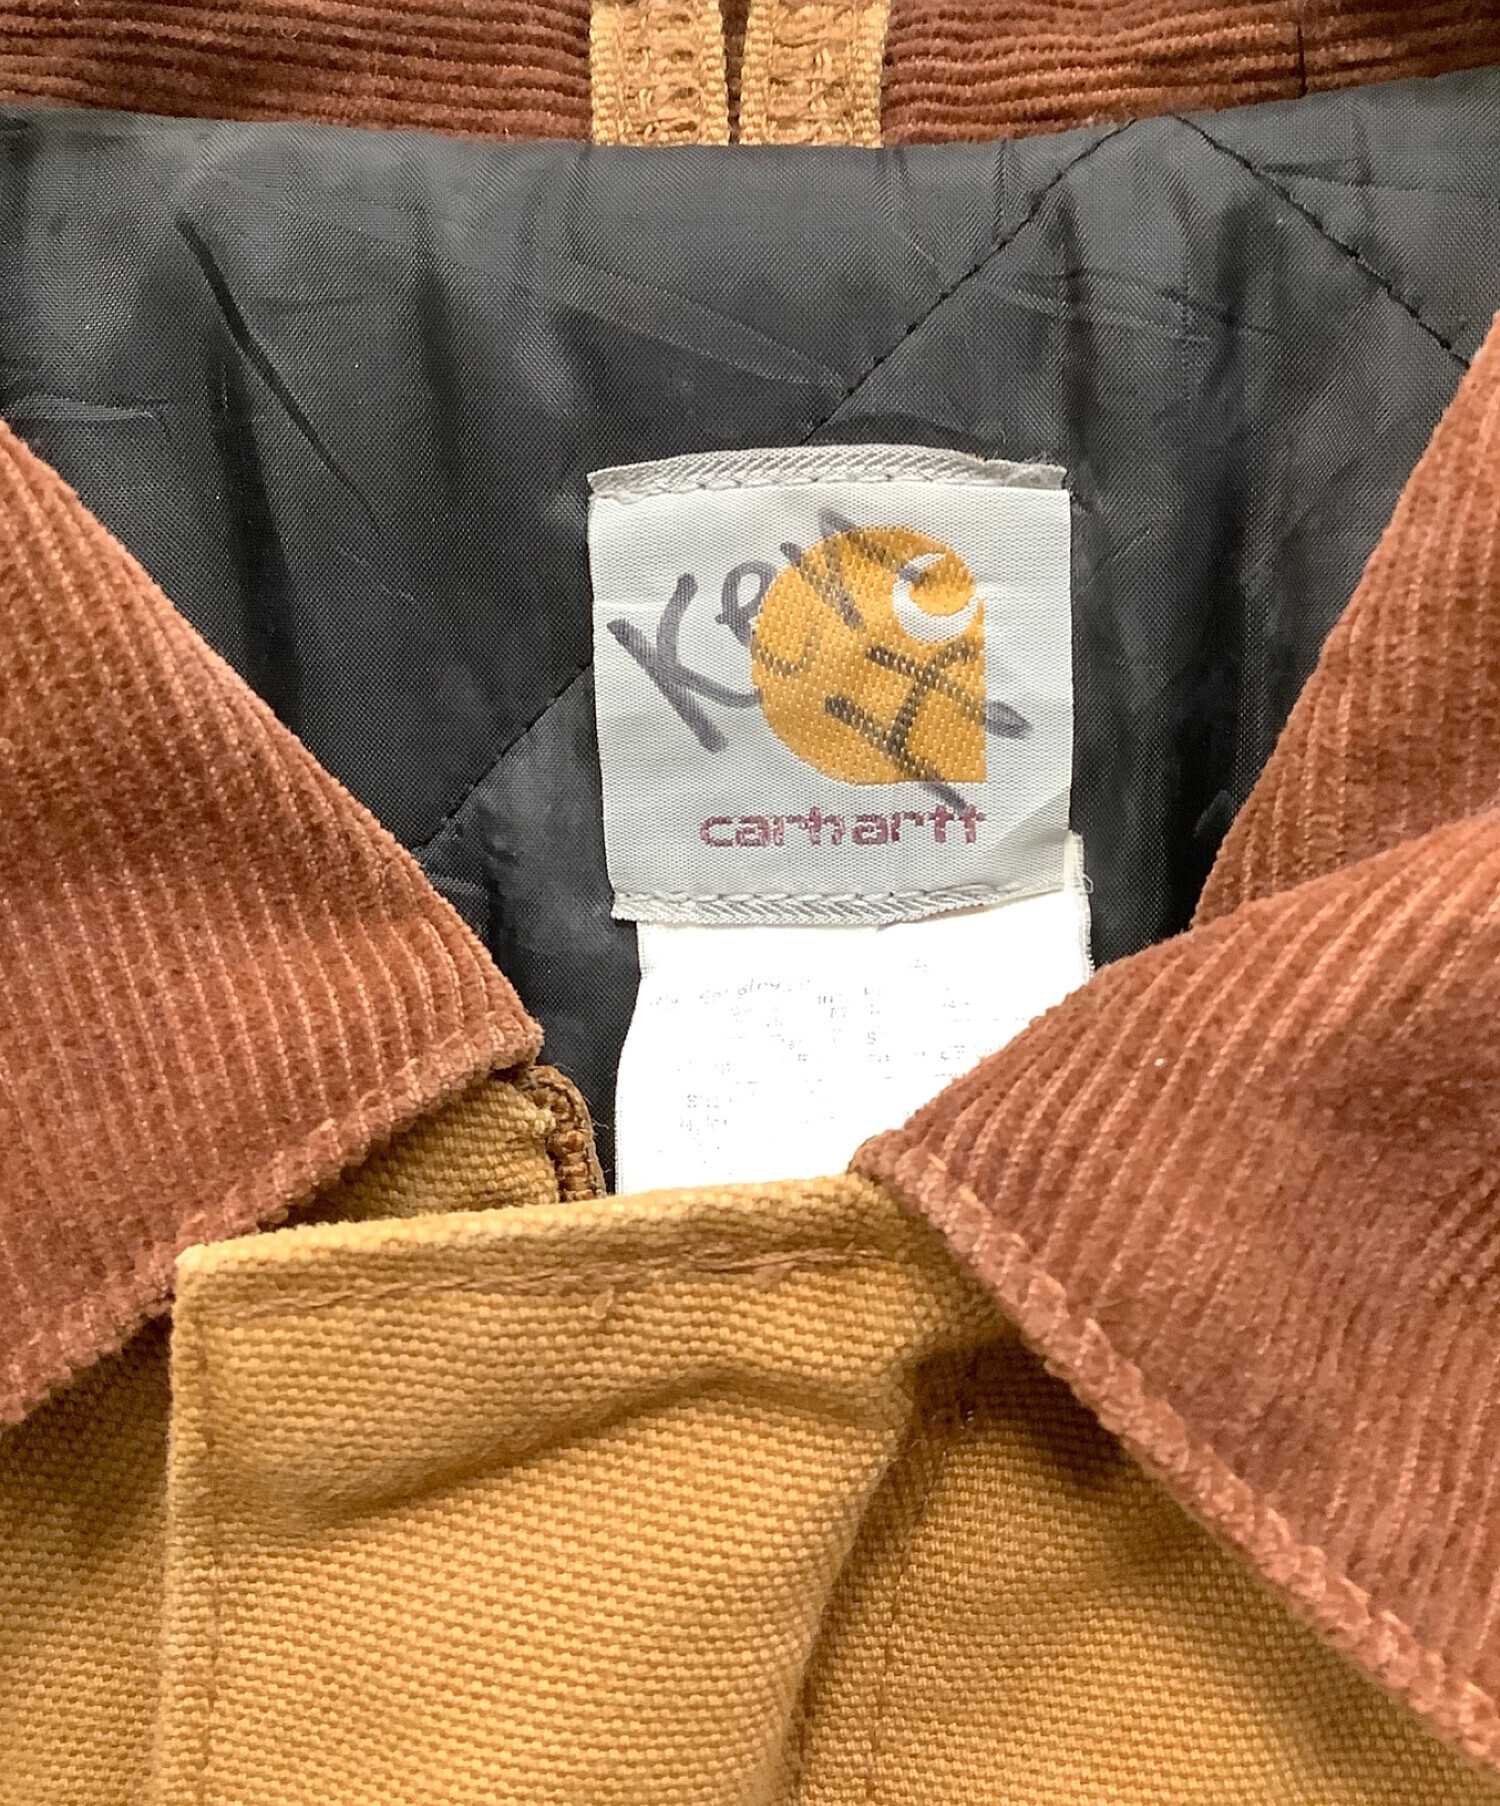 CarHartt (カーハート) ハンティングジャケット ベージュ サイズ:フリー